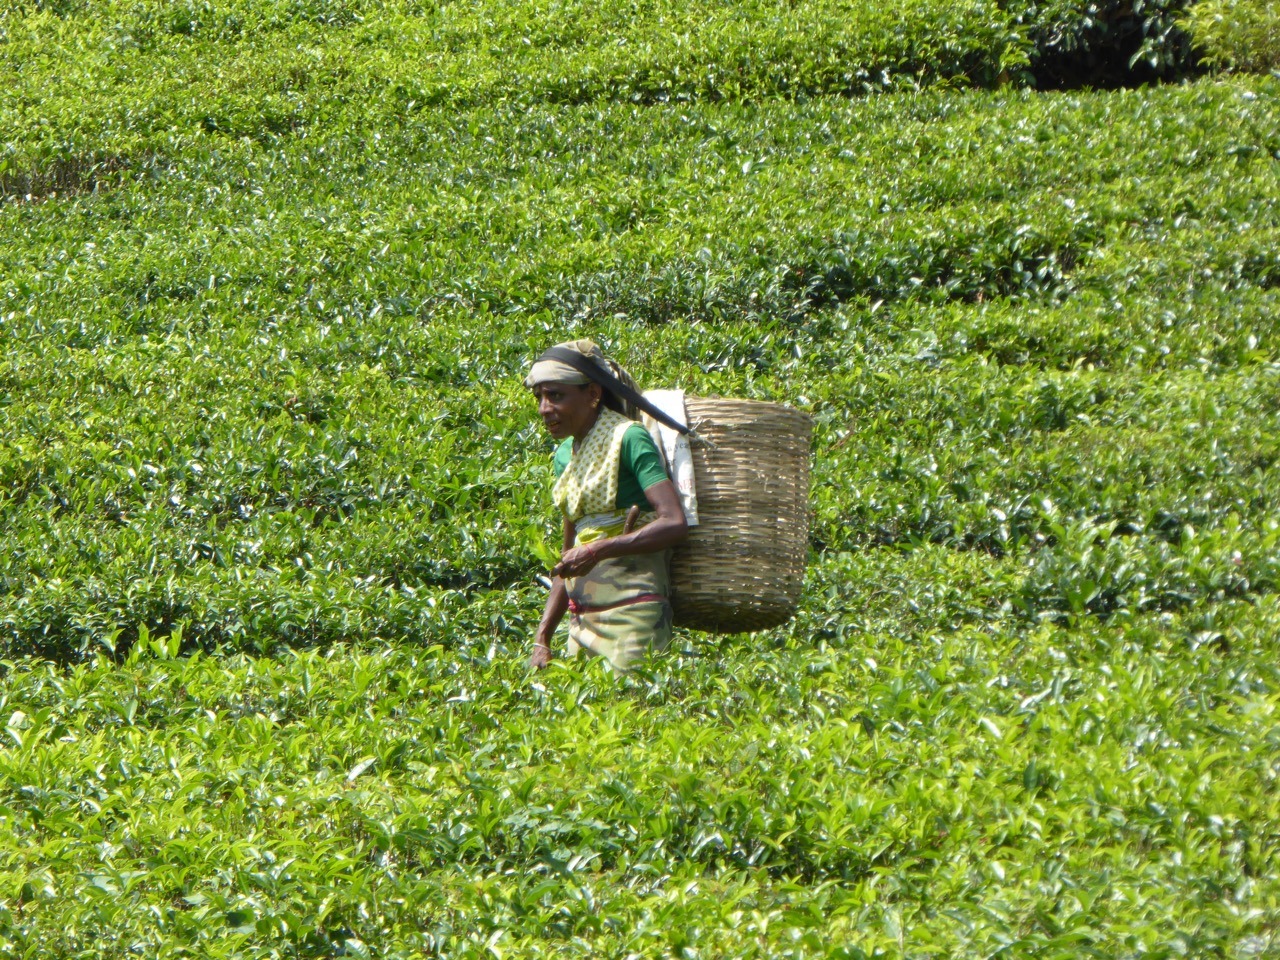 Organic Green Tea - Fairtrade